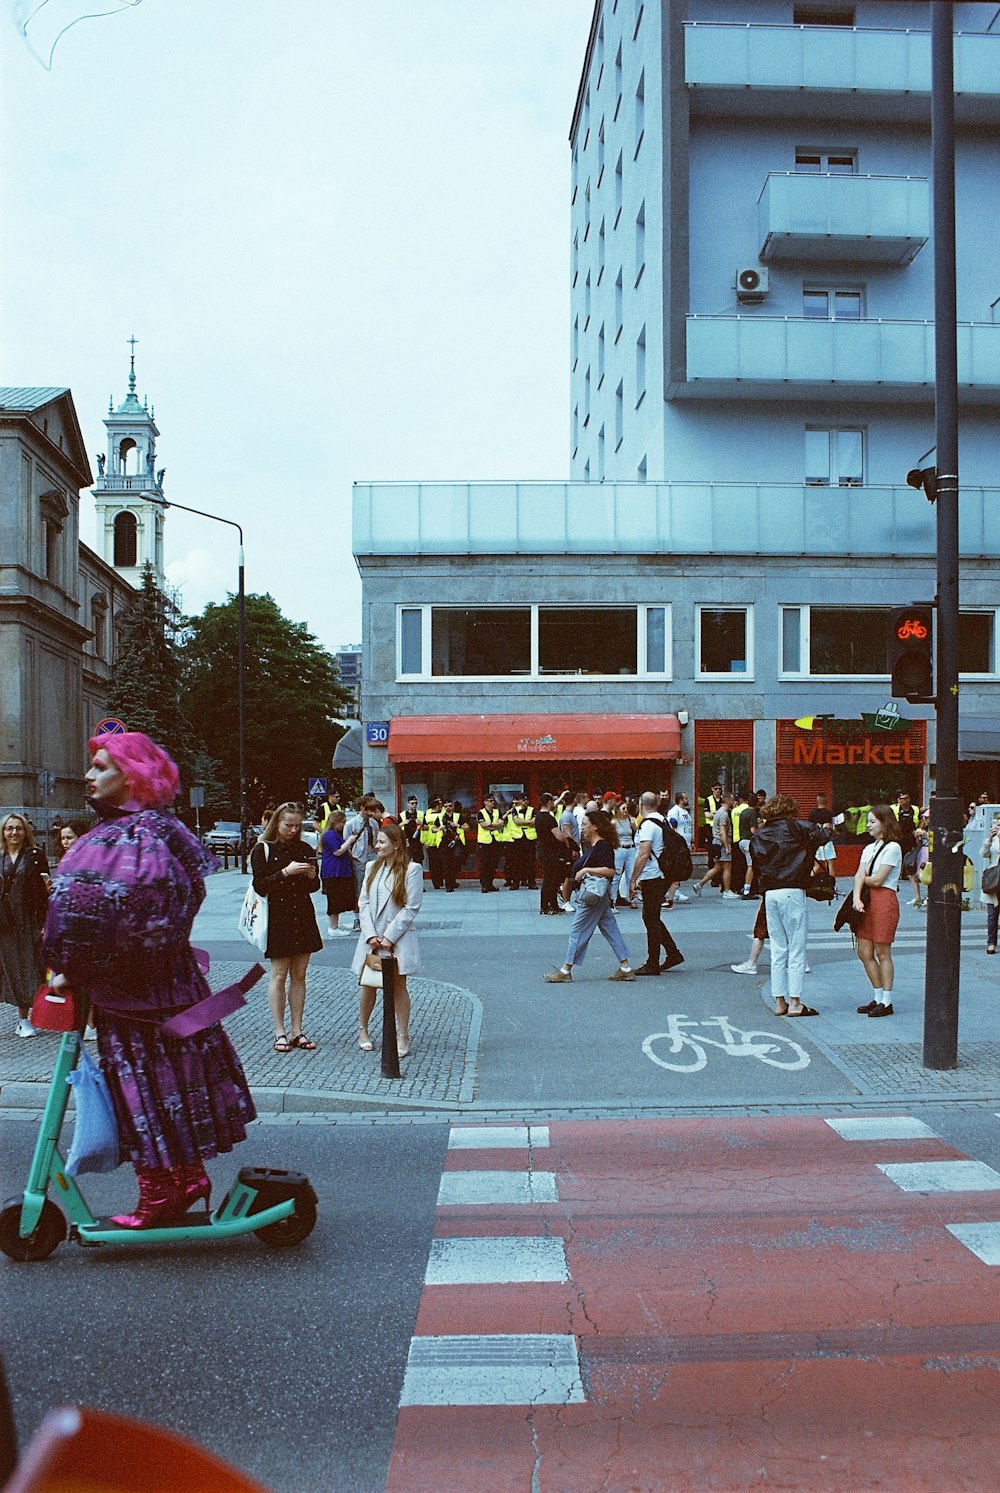 Una persona che guida uno scooter su una strada della città